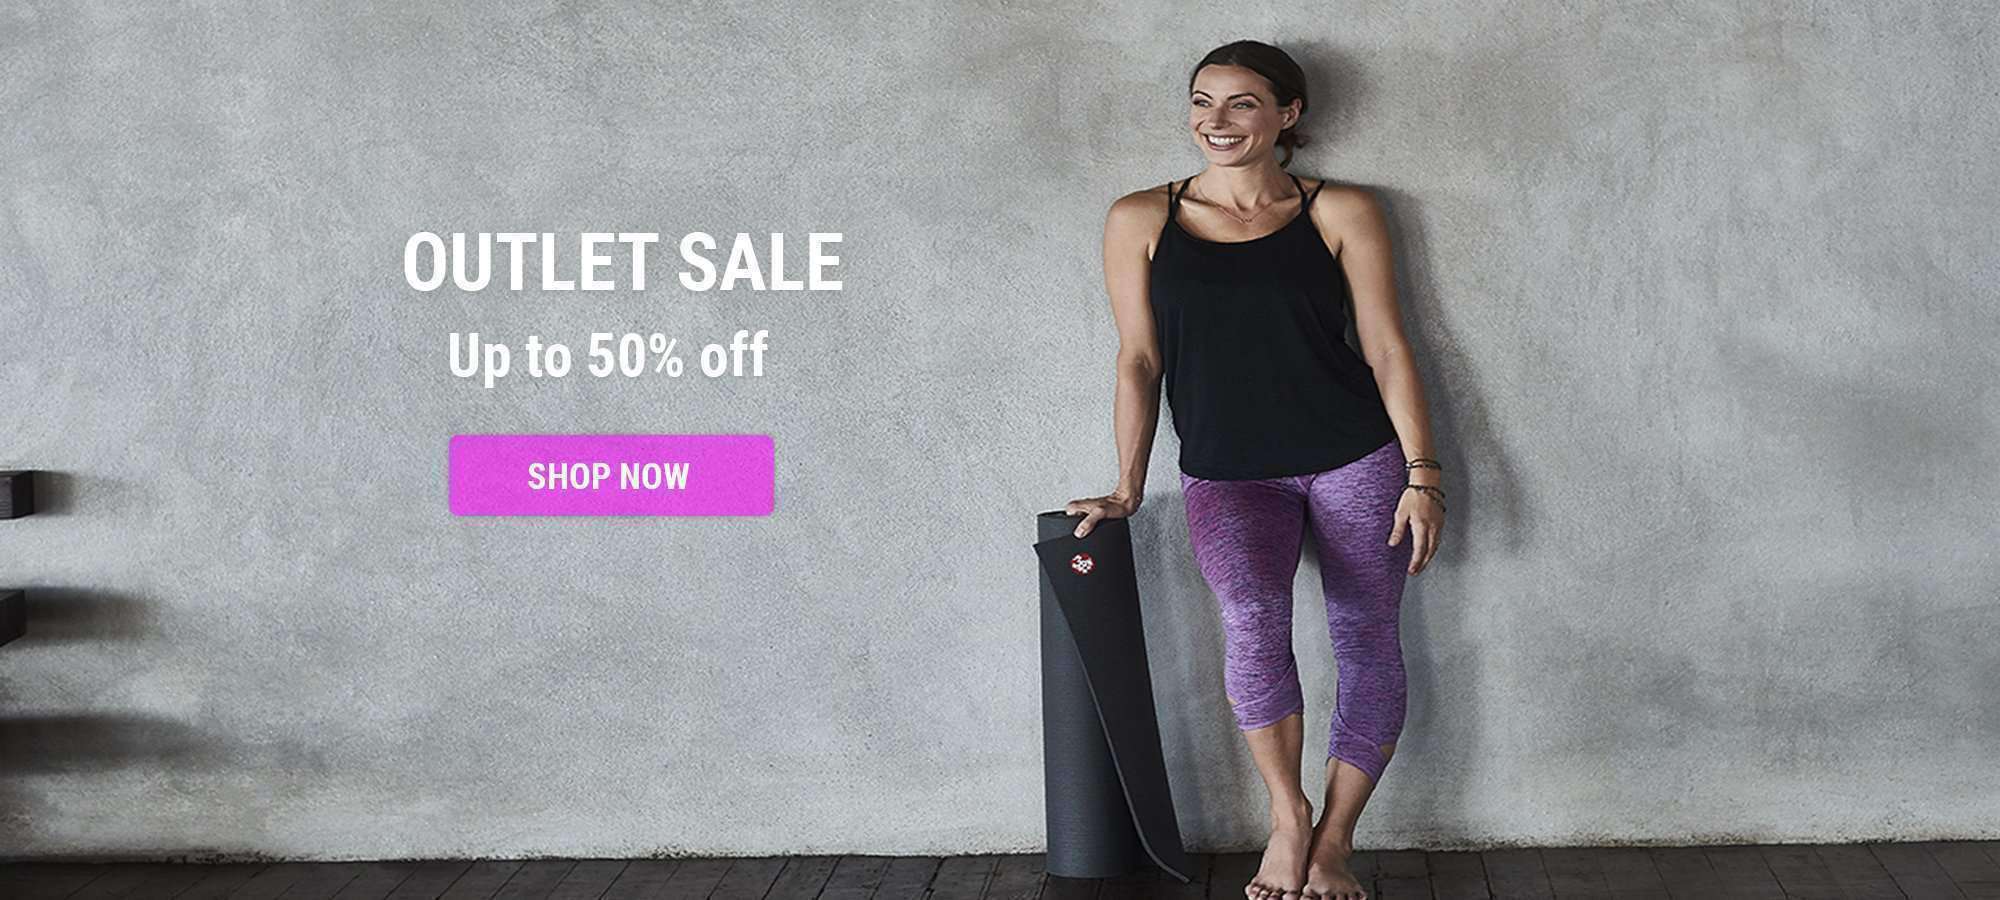 Yoga Outlet & Clearance - Shop Sales & Deals